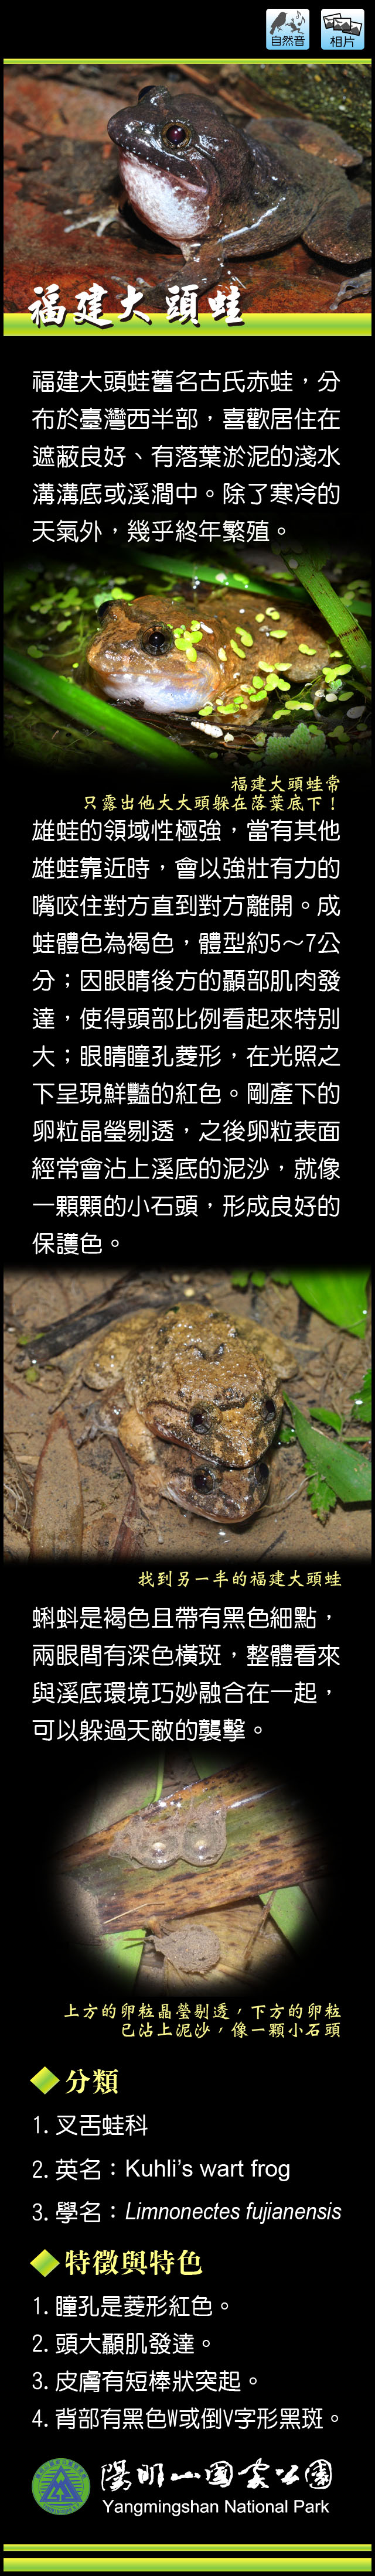 福建大頭蛙介紹